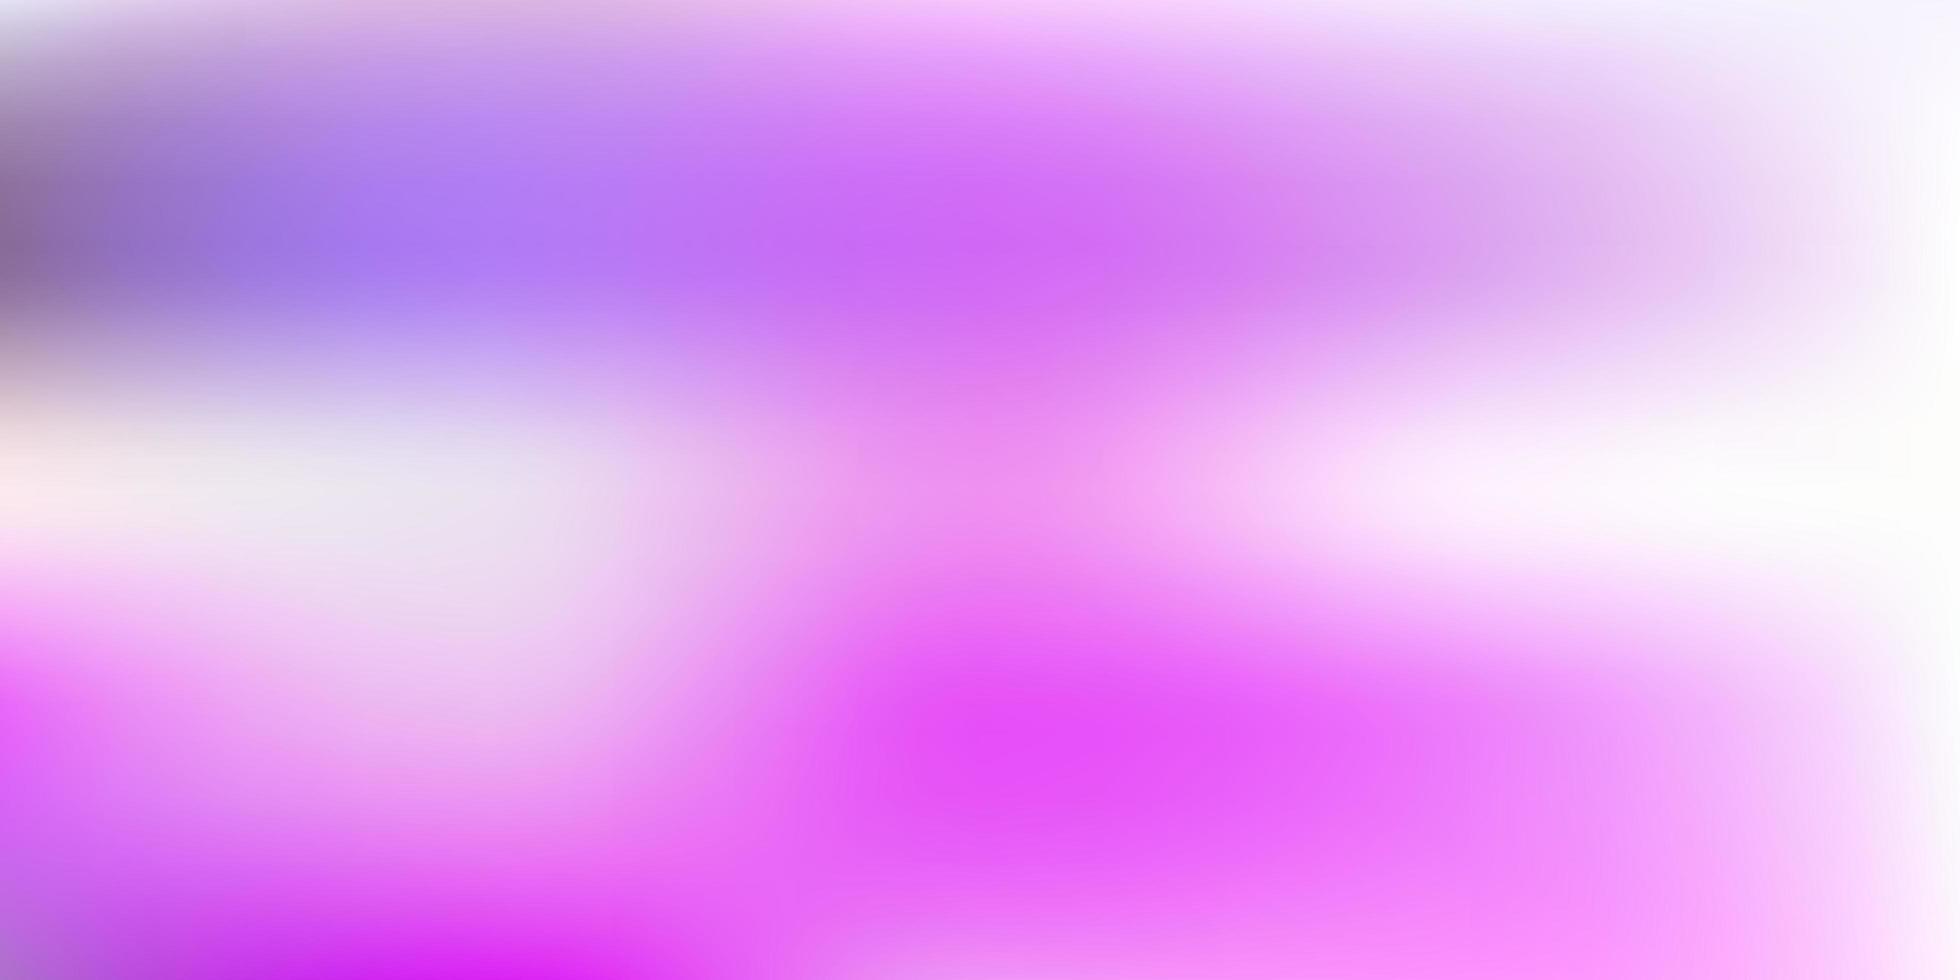 trama di sfocatura astratta vettoriale viola chiaro, rosa.